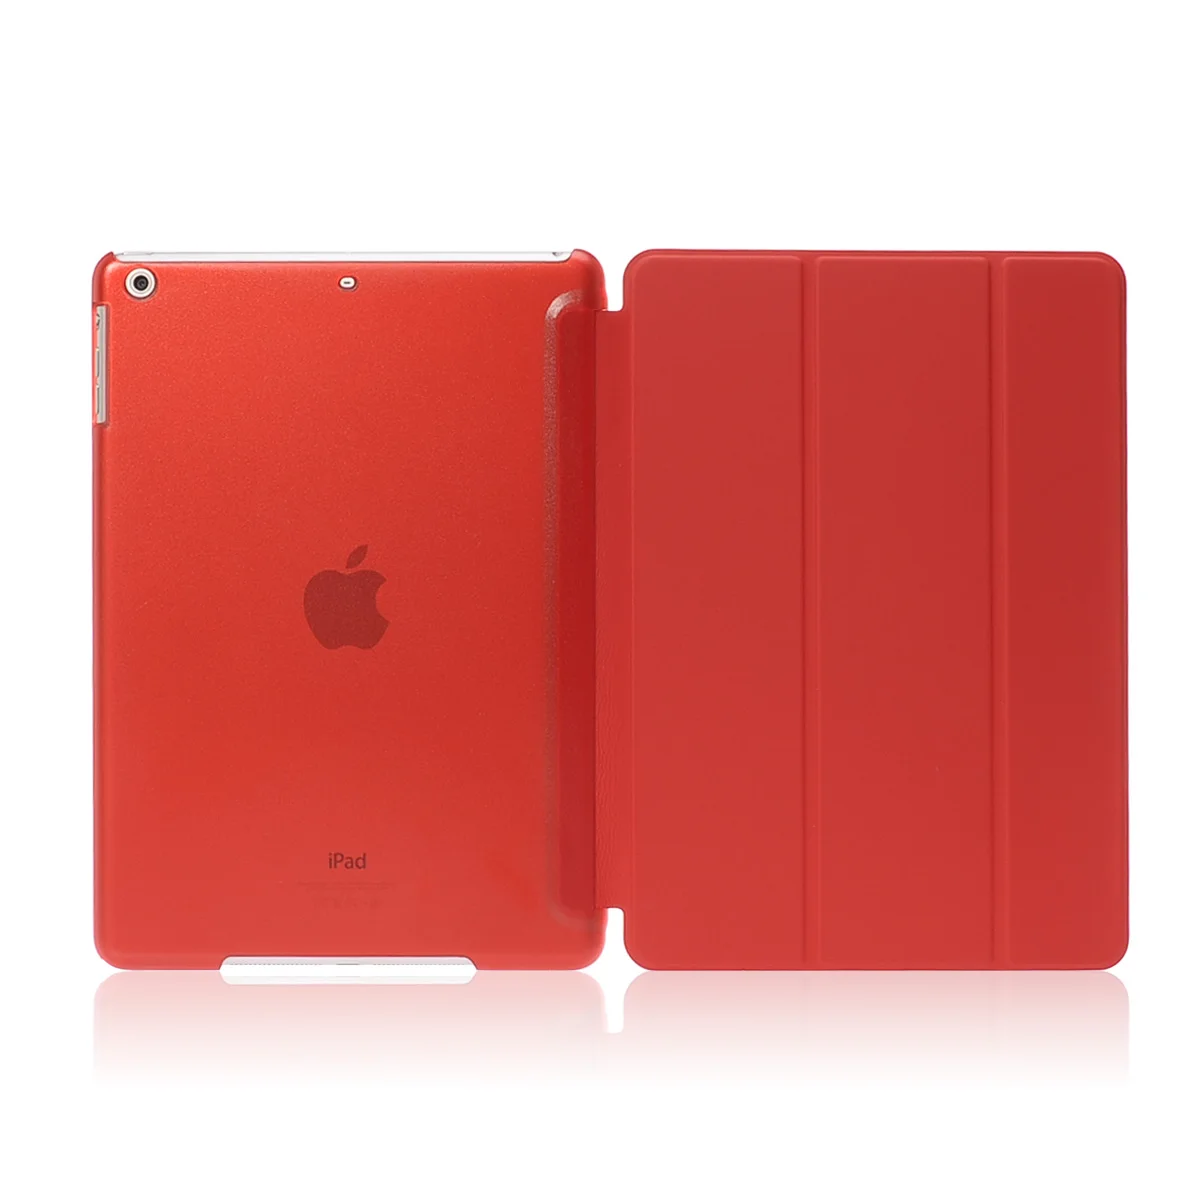 Умный кожаный чехол-подставка для планшета Apple Ipad Air 9,7 дюймов PU Wake для I Pad 5 Air1 Sleepcover Ipadstand кожаный чехол - Цвет: Красный